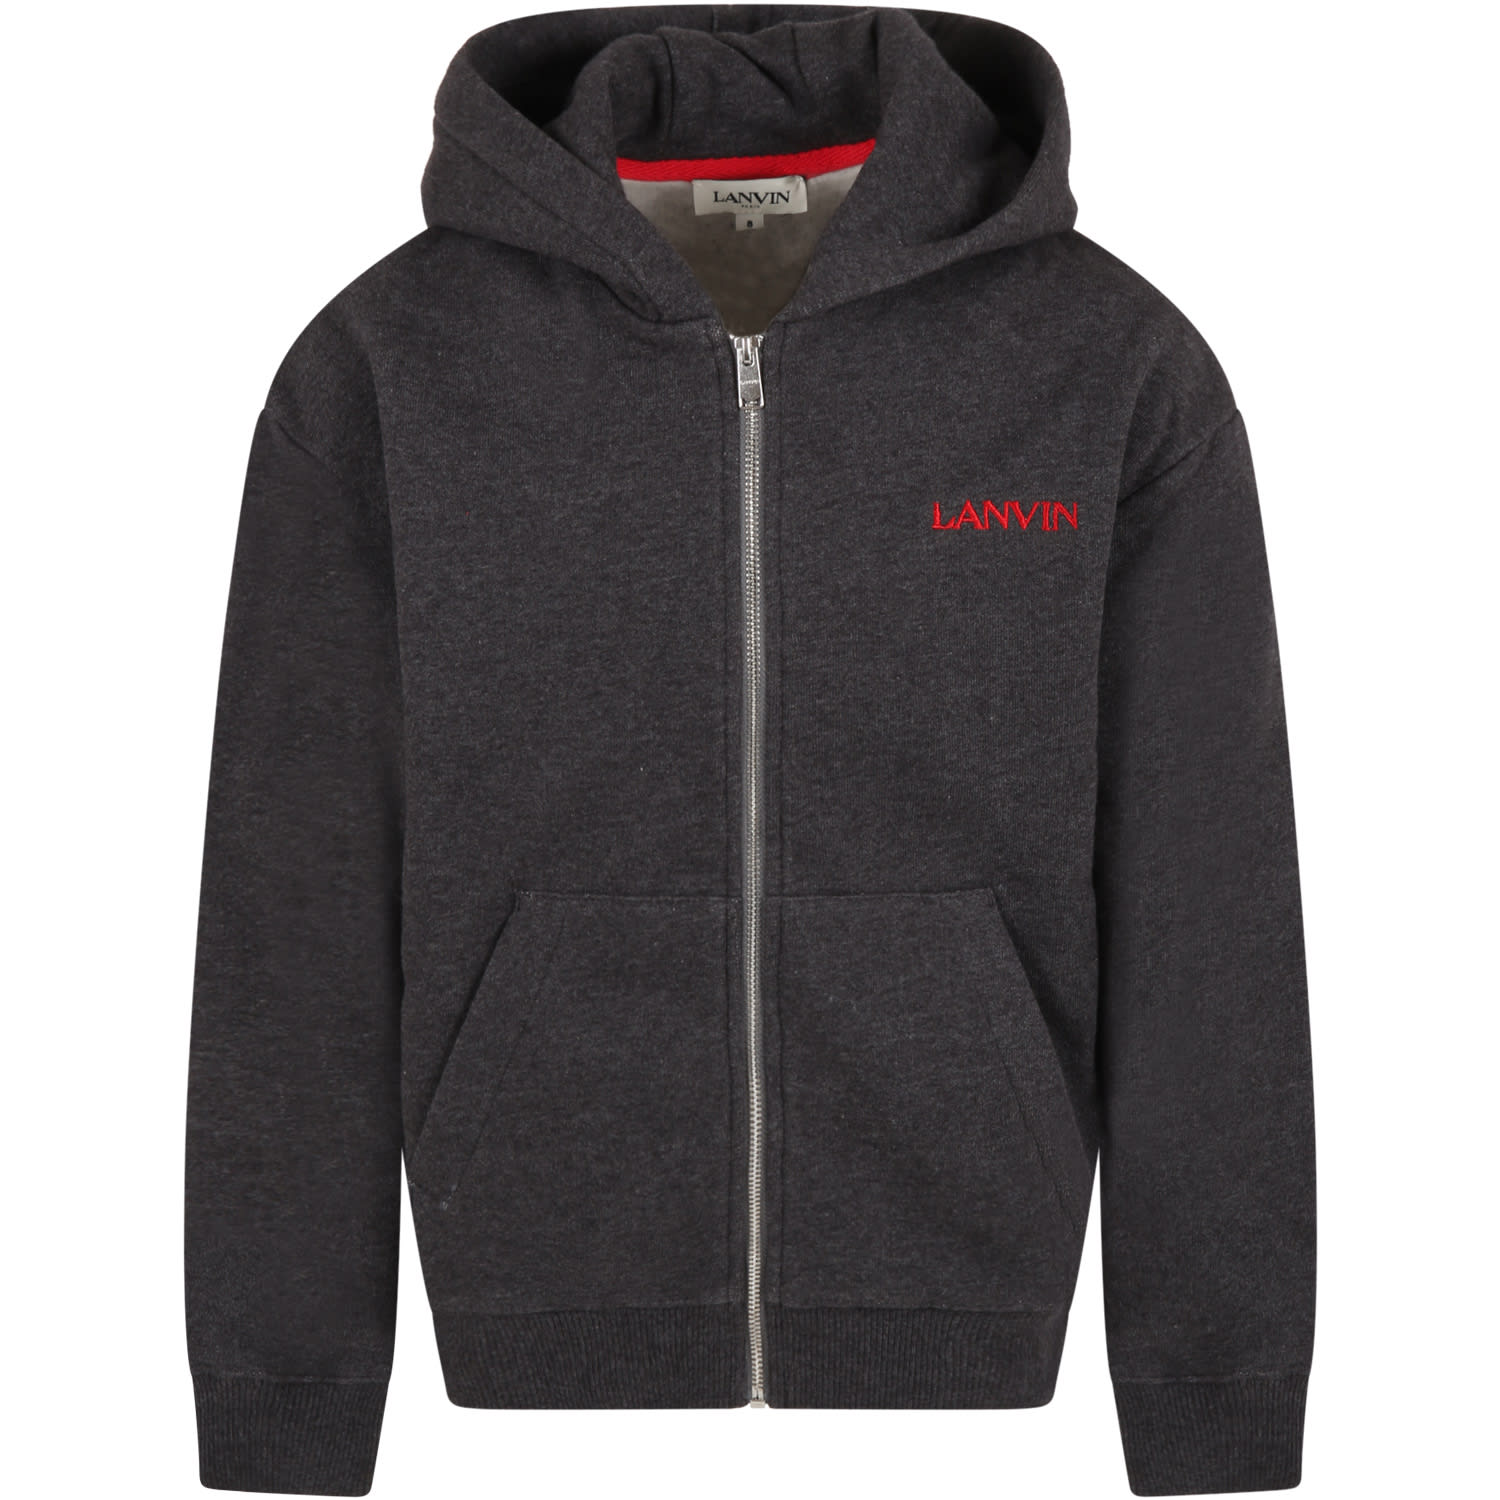 Lanvin Grey Sweatshirt For Boy With Logo